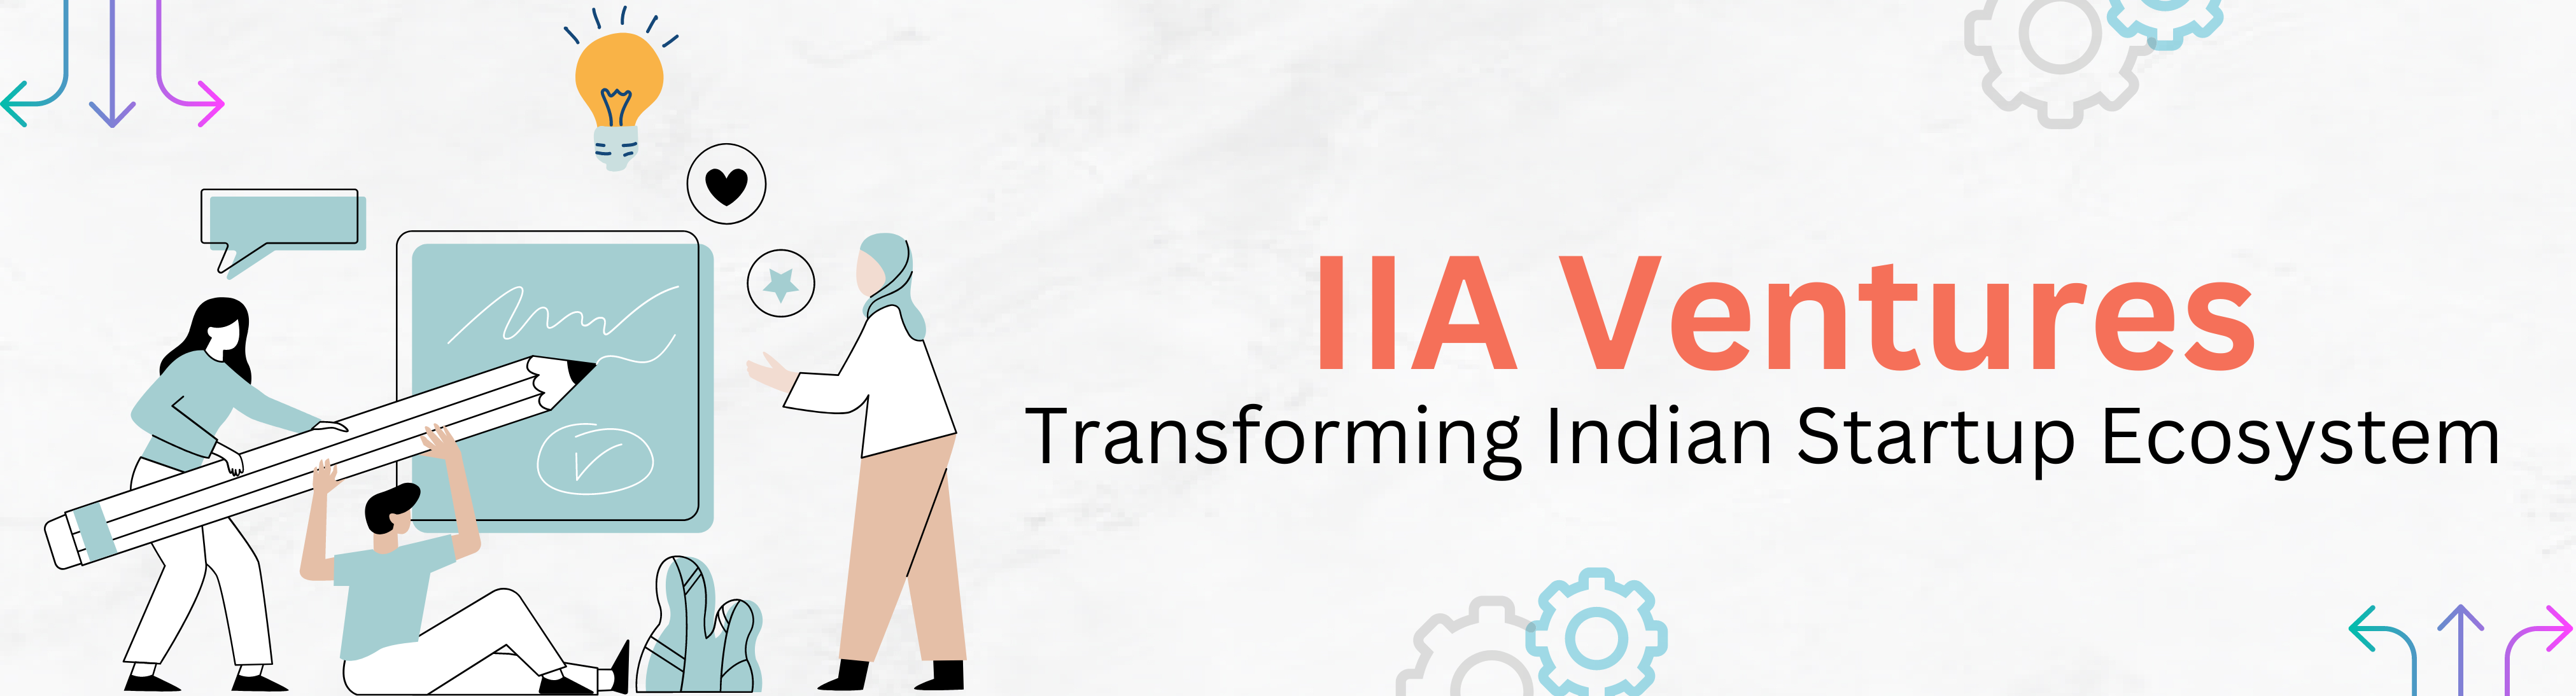 Blog Details | IIA Ventures